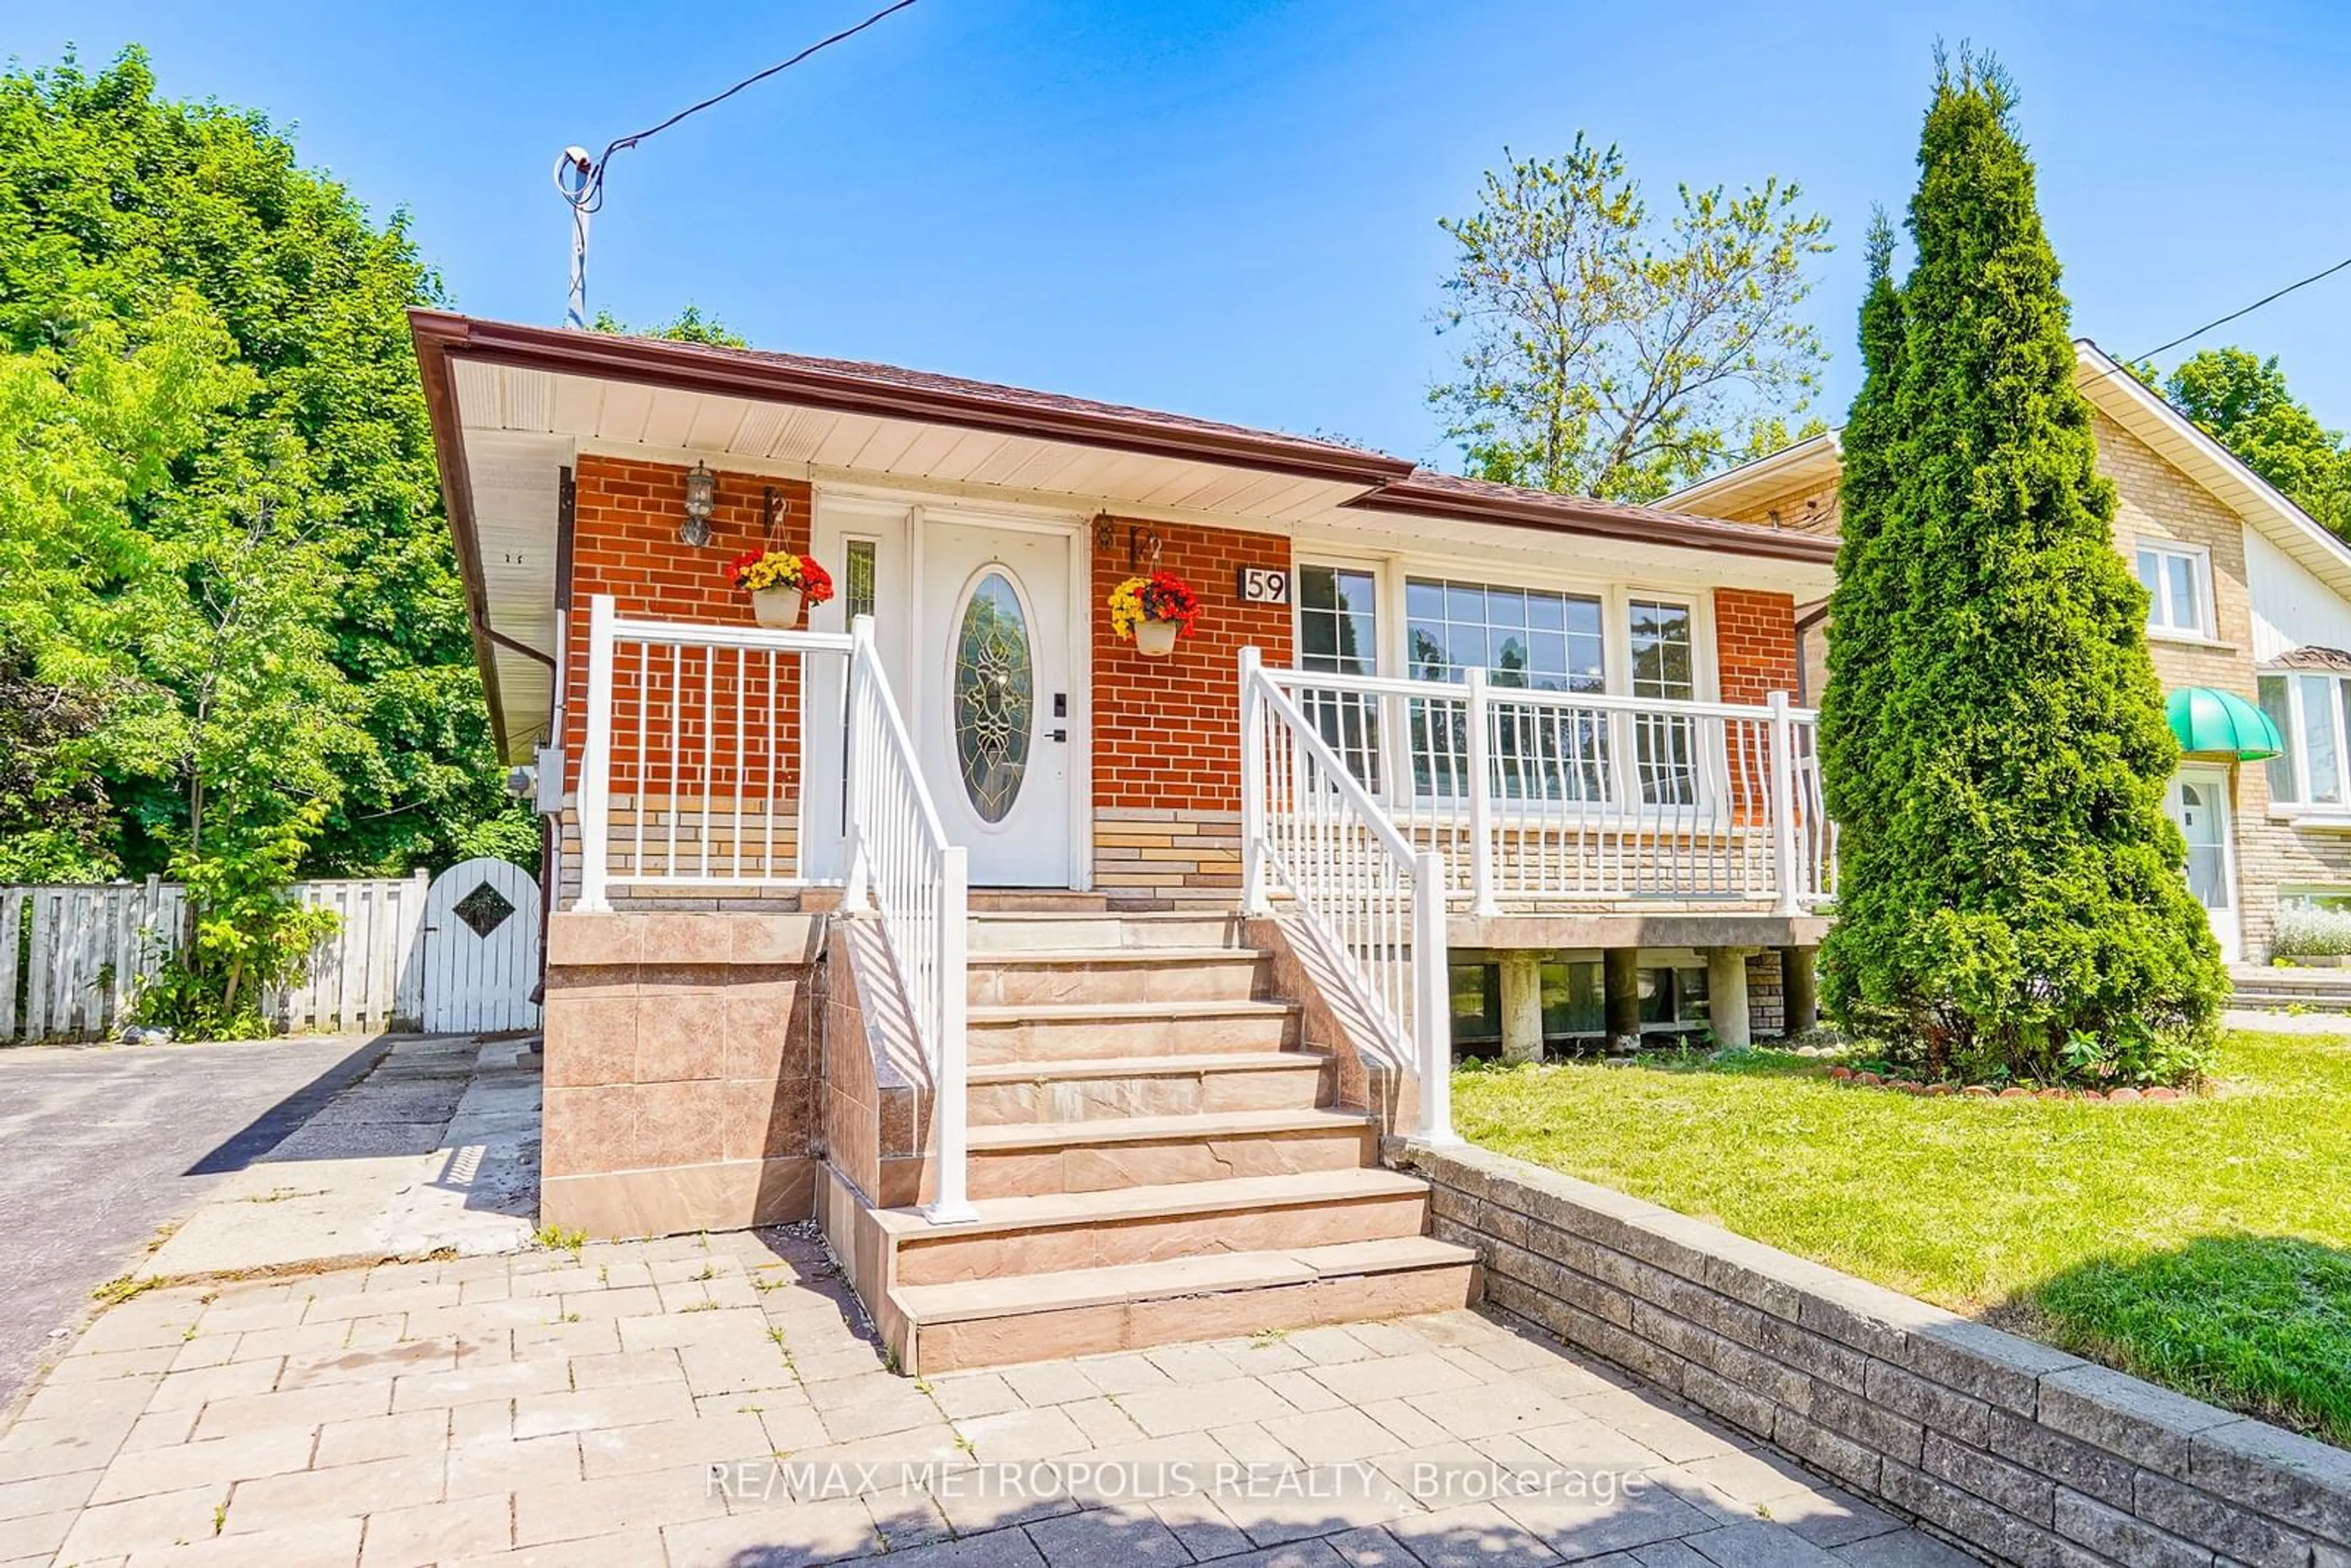 Home with brick exterior material for 59 Grassington Cres, Toronto Ontario M1G 1X4